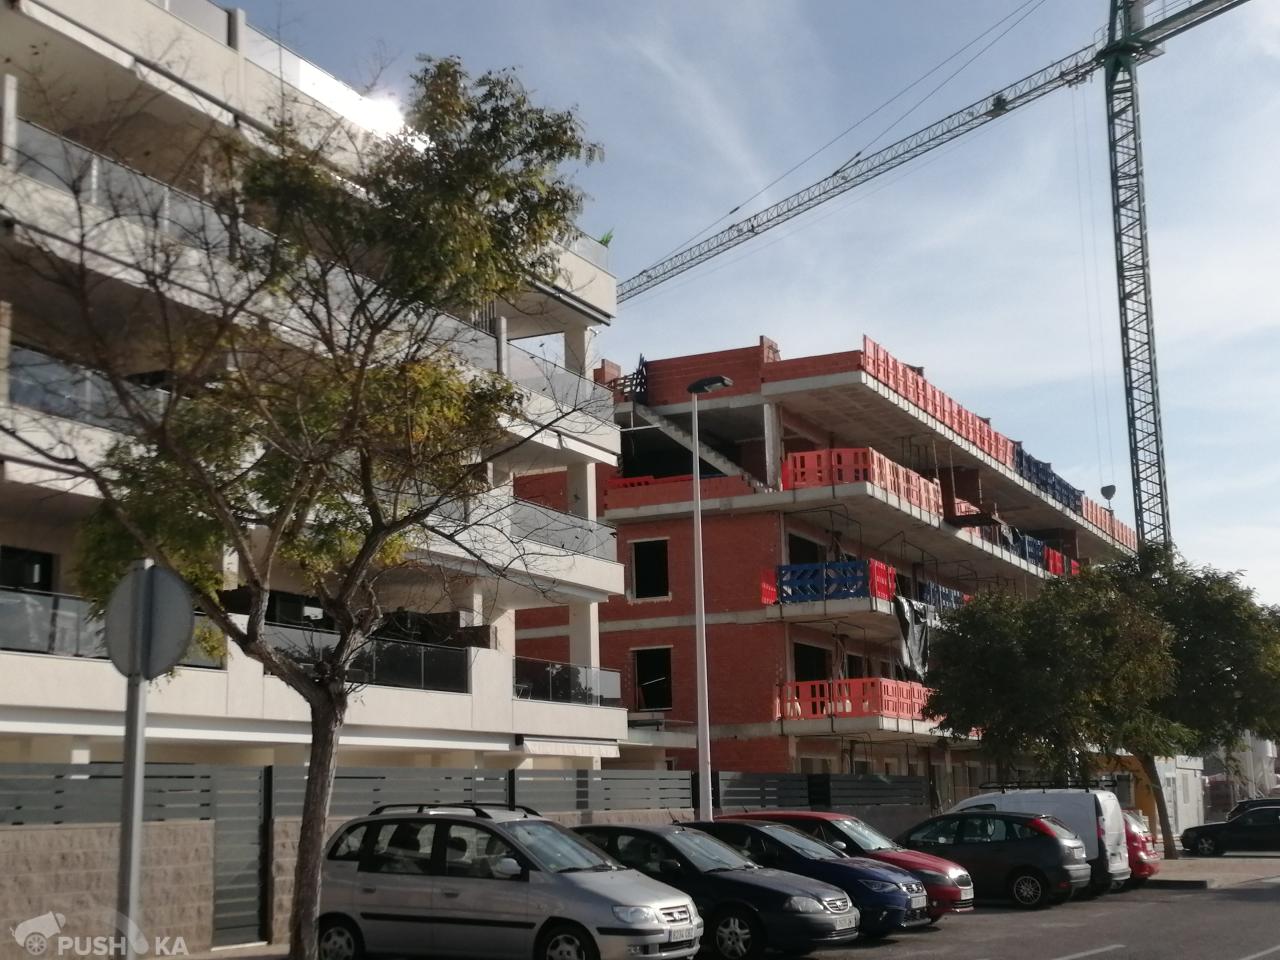 Купить трёхкомнатную квартиру в новостройке Испания, автономное сообщество Валенсия, Аликанте, Санта Пола, Calle Pintor Sorolla, 8 - Foreign real estate service PUSH-KA, объявление №194047